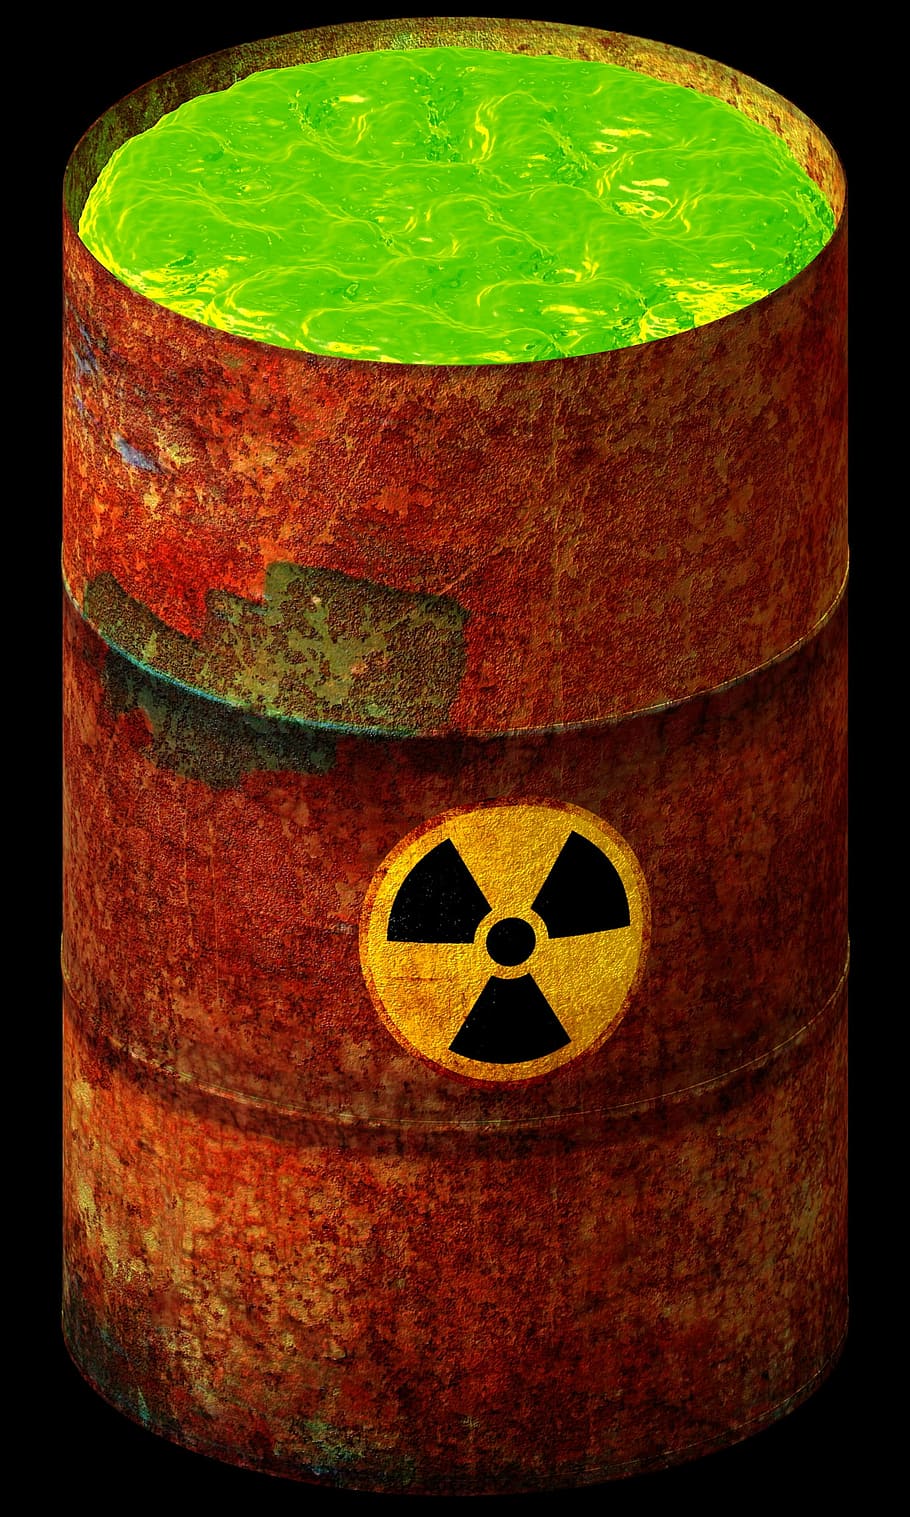 tambor marrom enferrujado, nuclear, resíduos, radioativo, tóxico, perigo, radiação, ambiente, poluição, ecologia